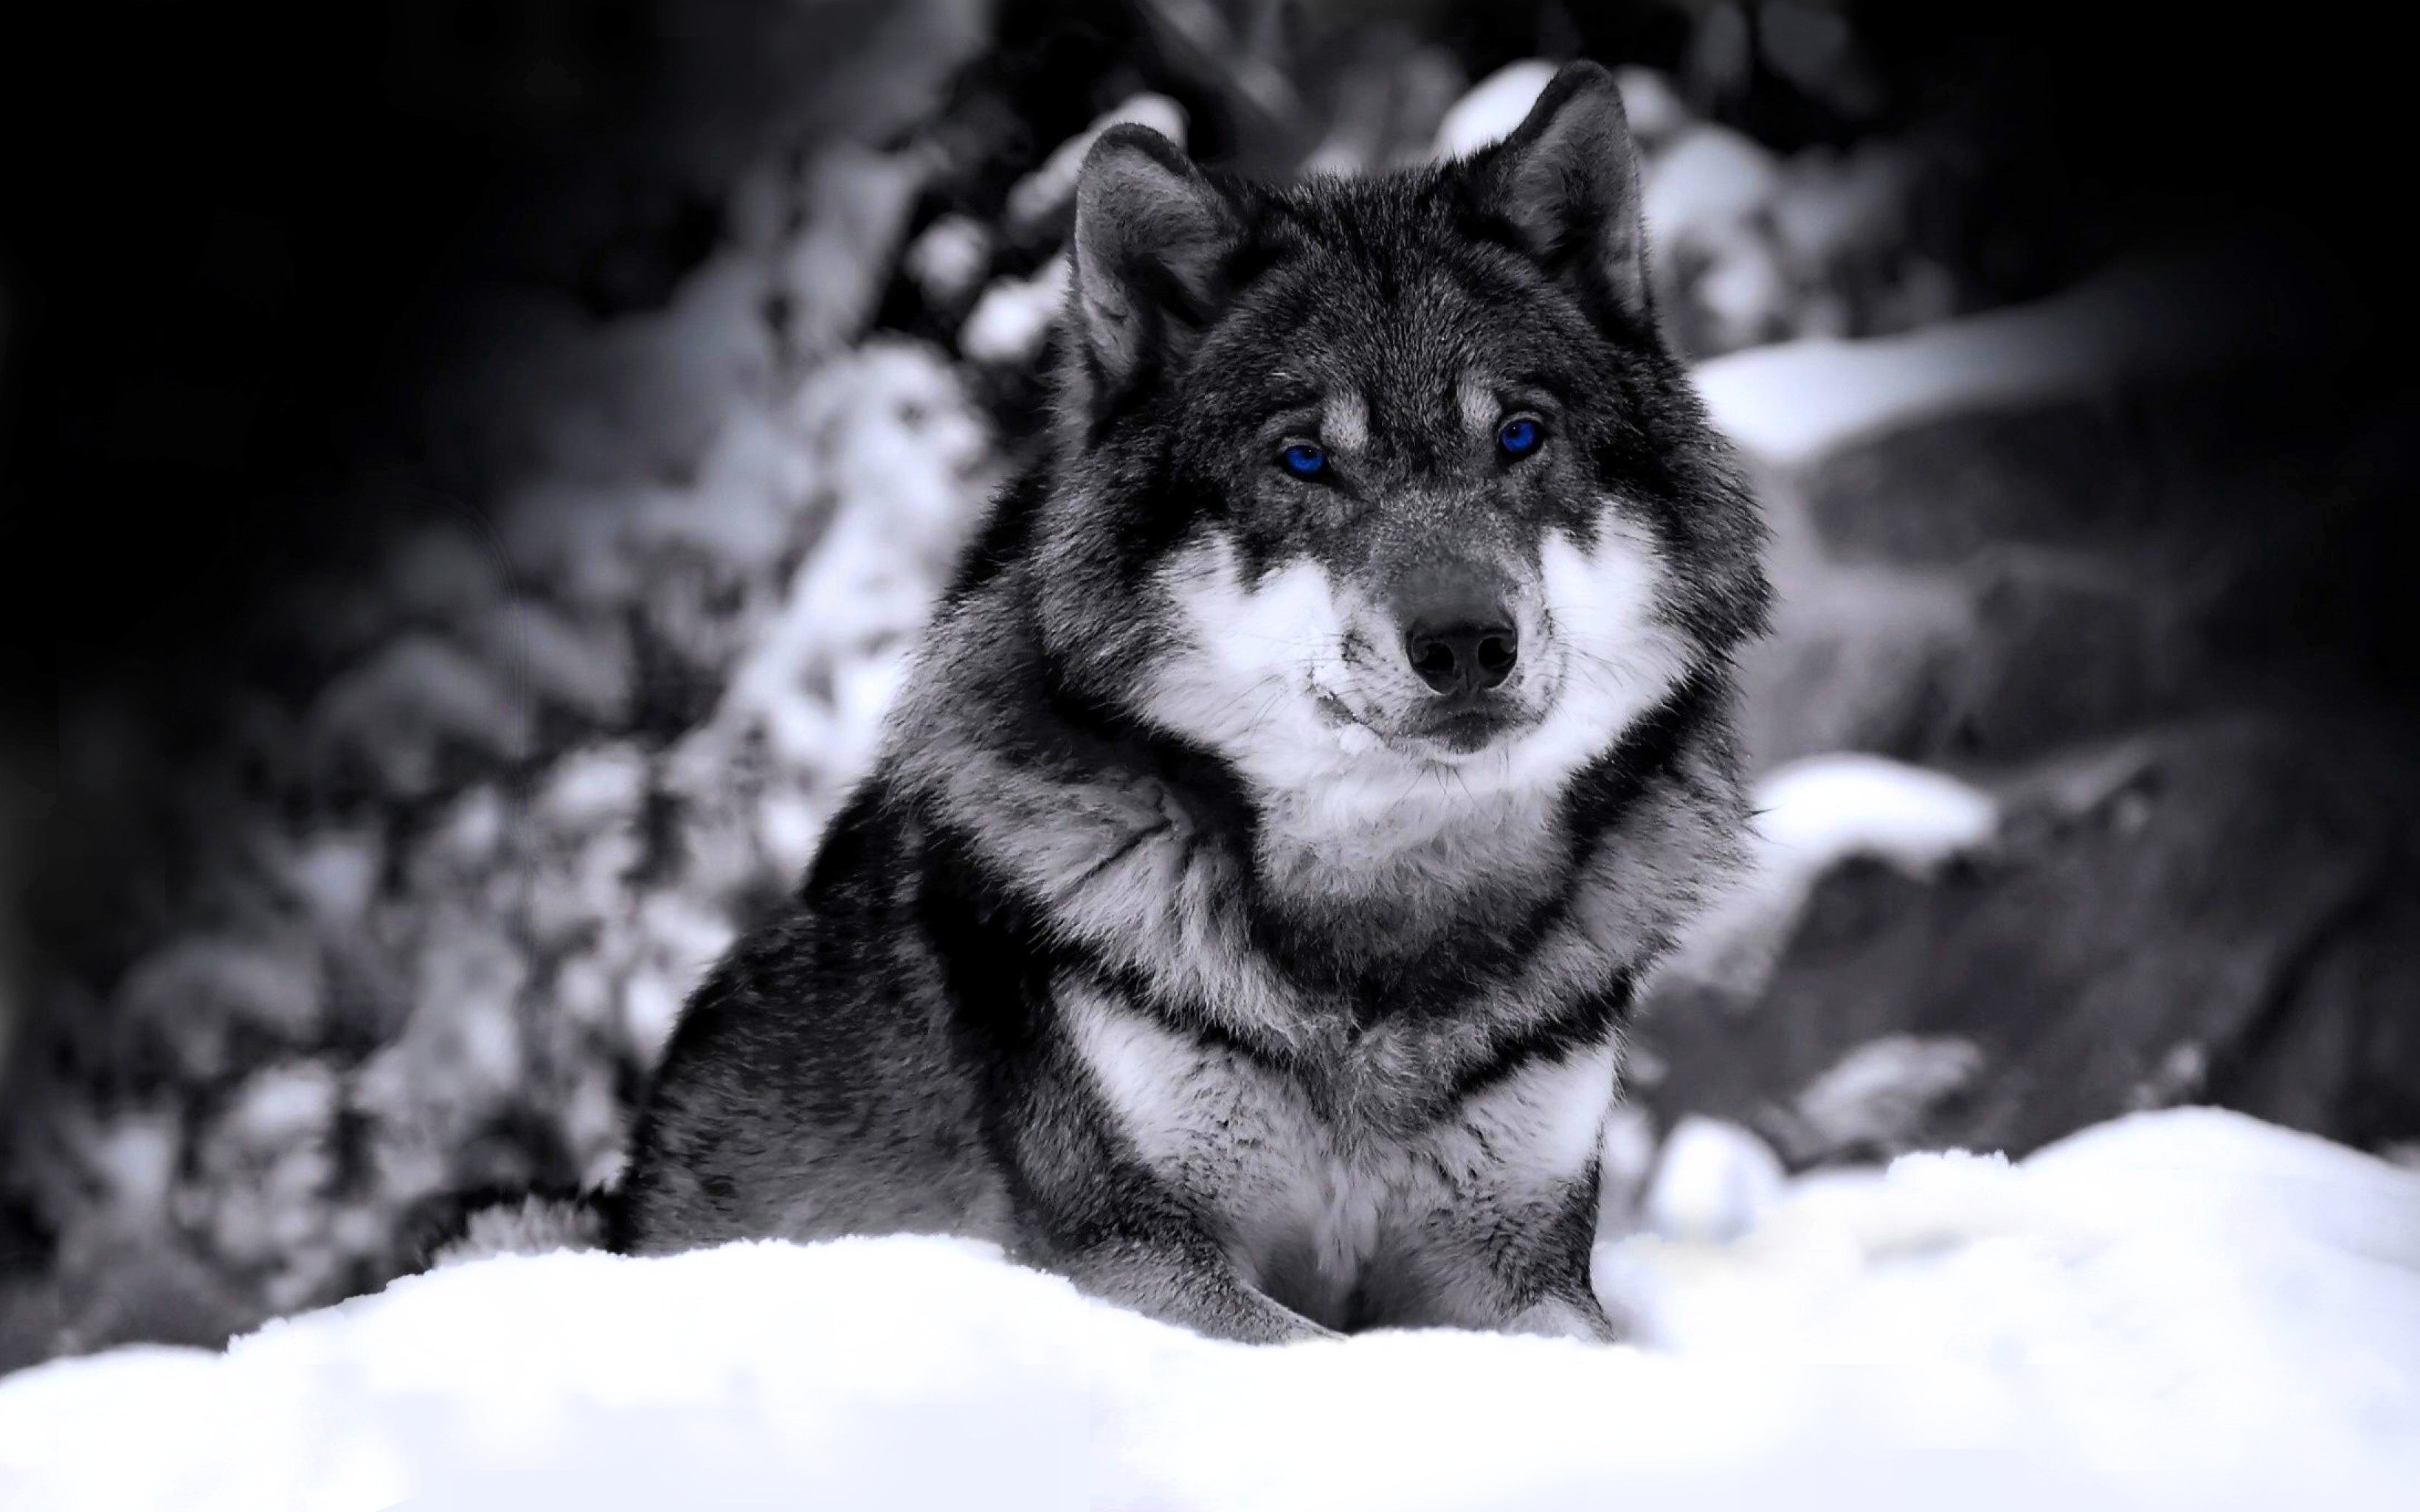 wolf tapete hd,schwarz und weiß,schwarz,hund,wolf,monochrome fotografie